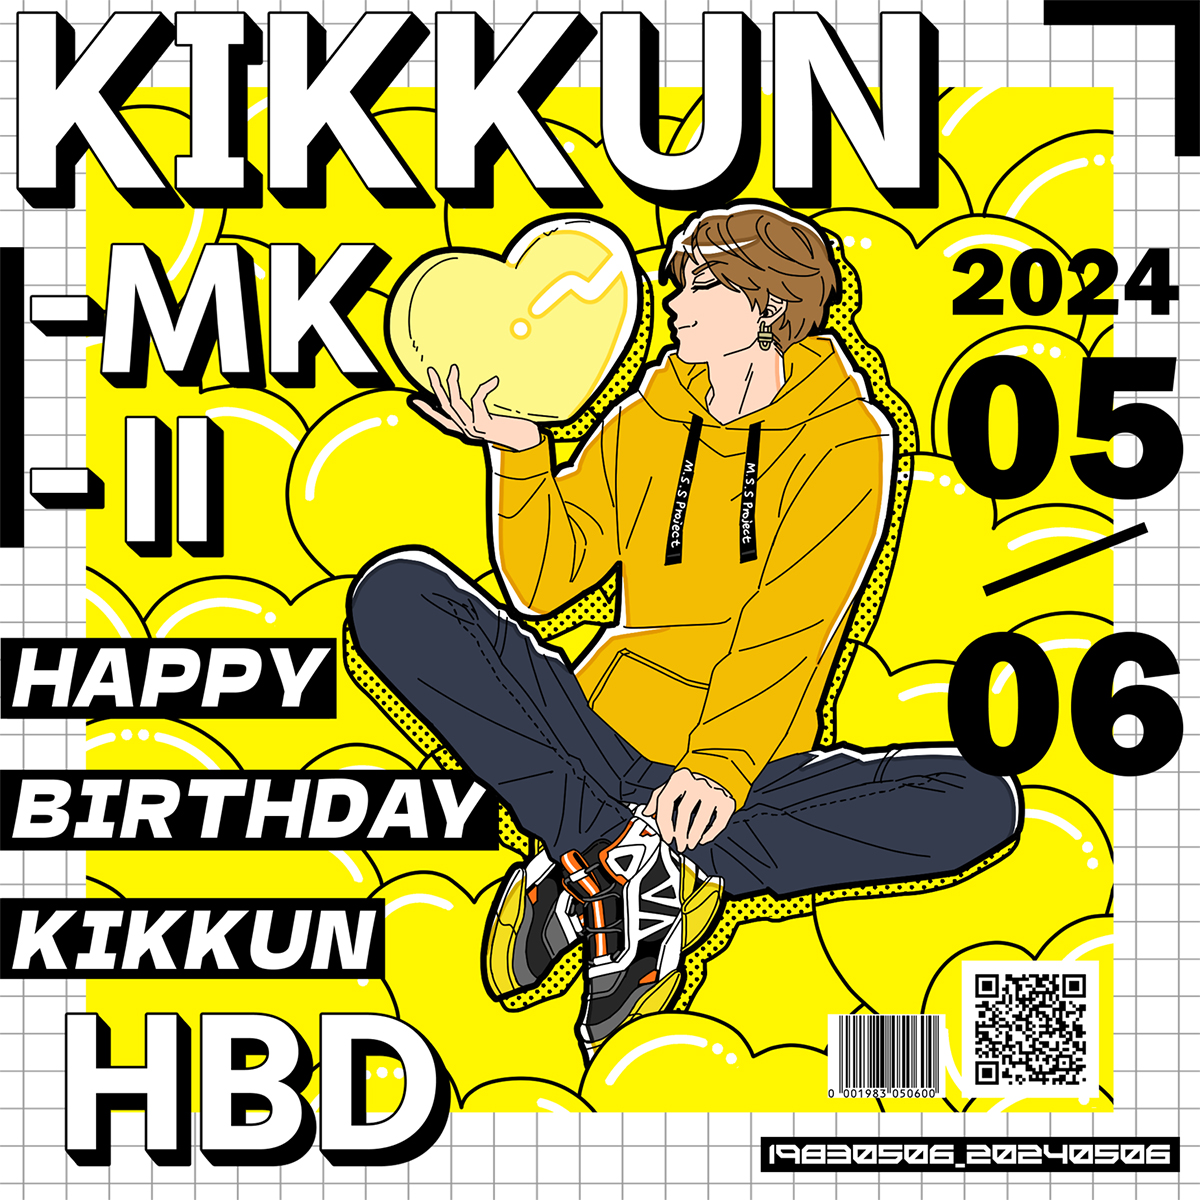 お誕生日おめでとうございます！🎉
#KIKKUN誕生祭2024
#MSSPアート